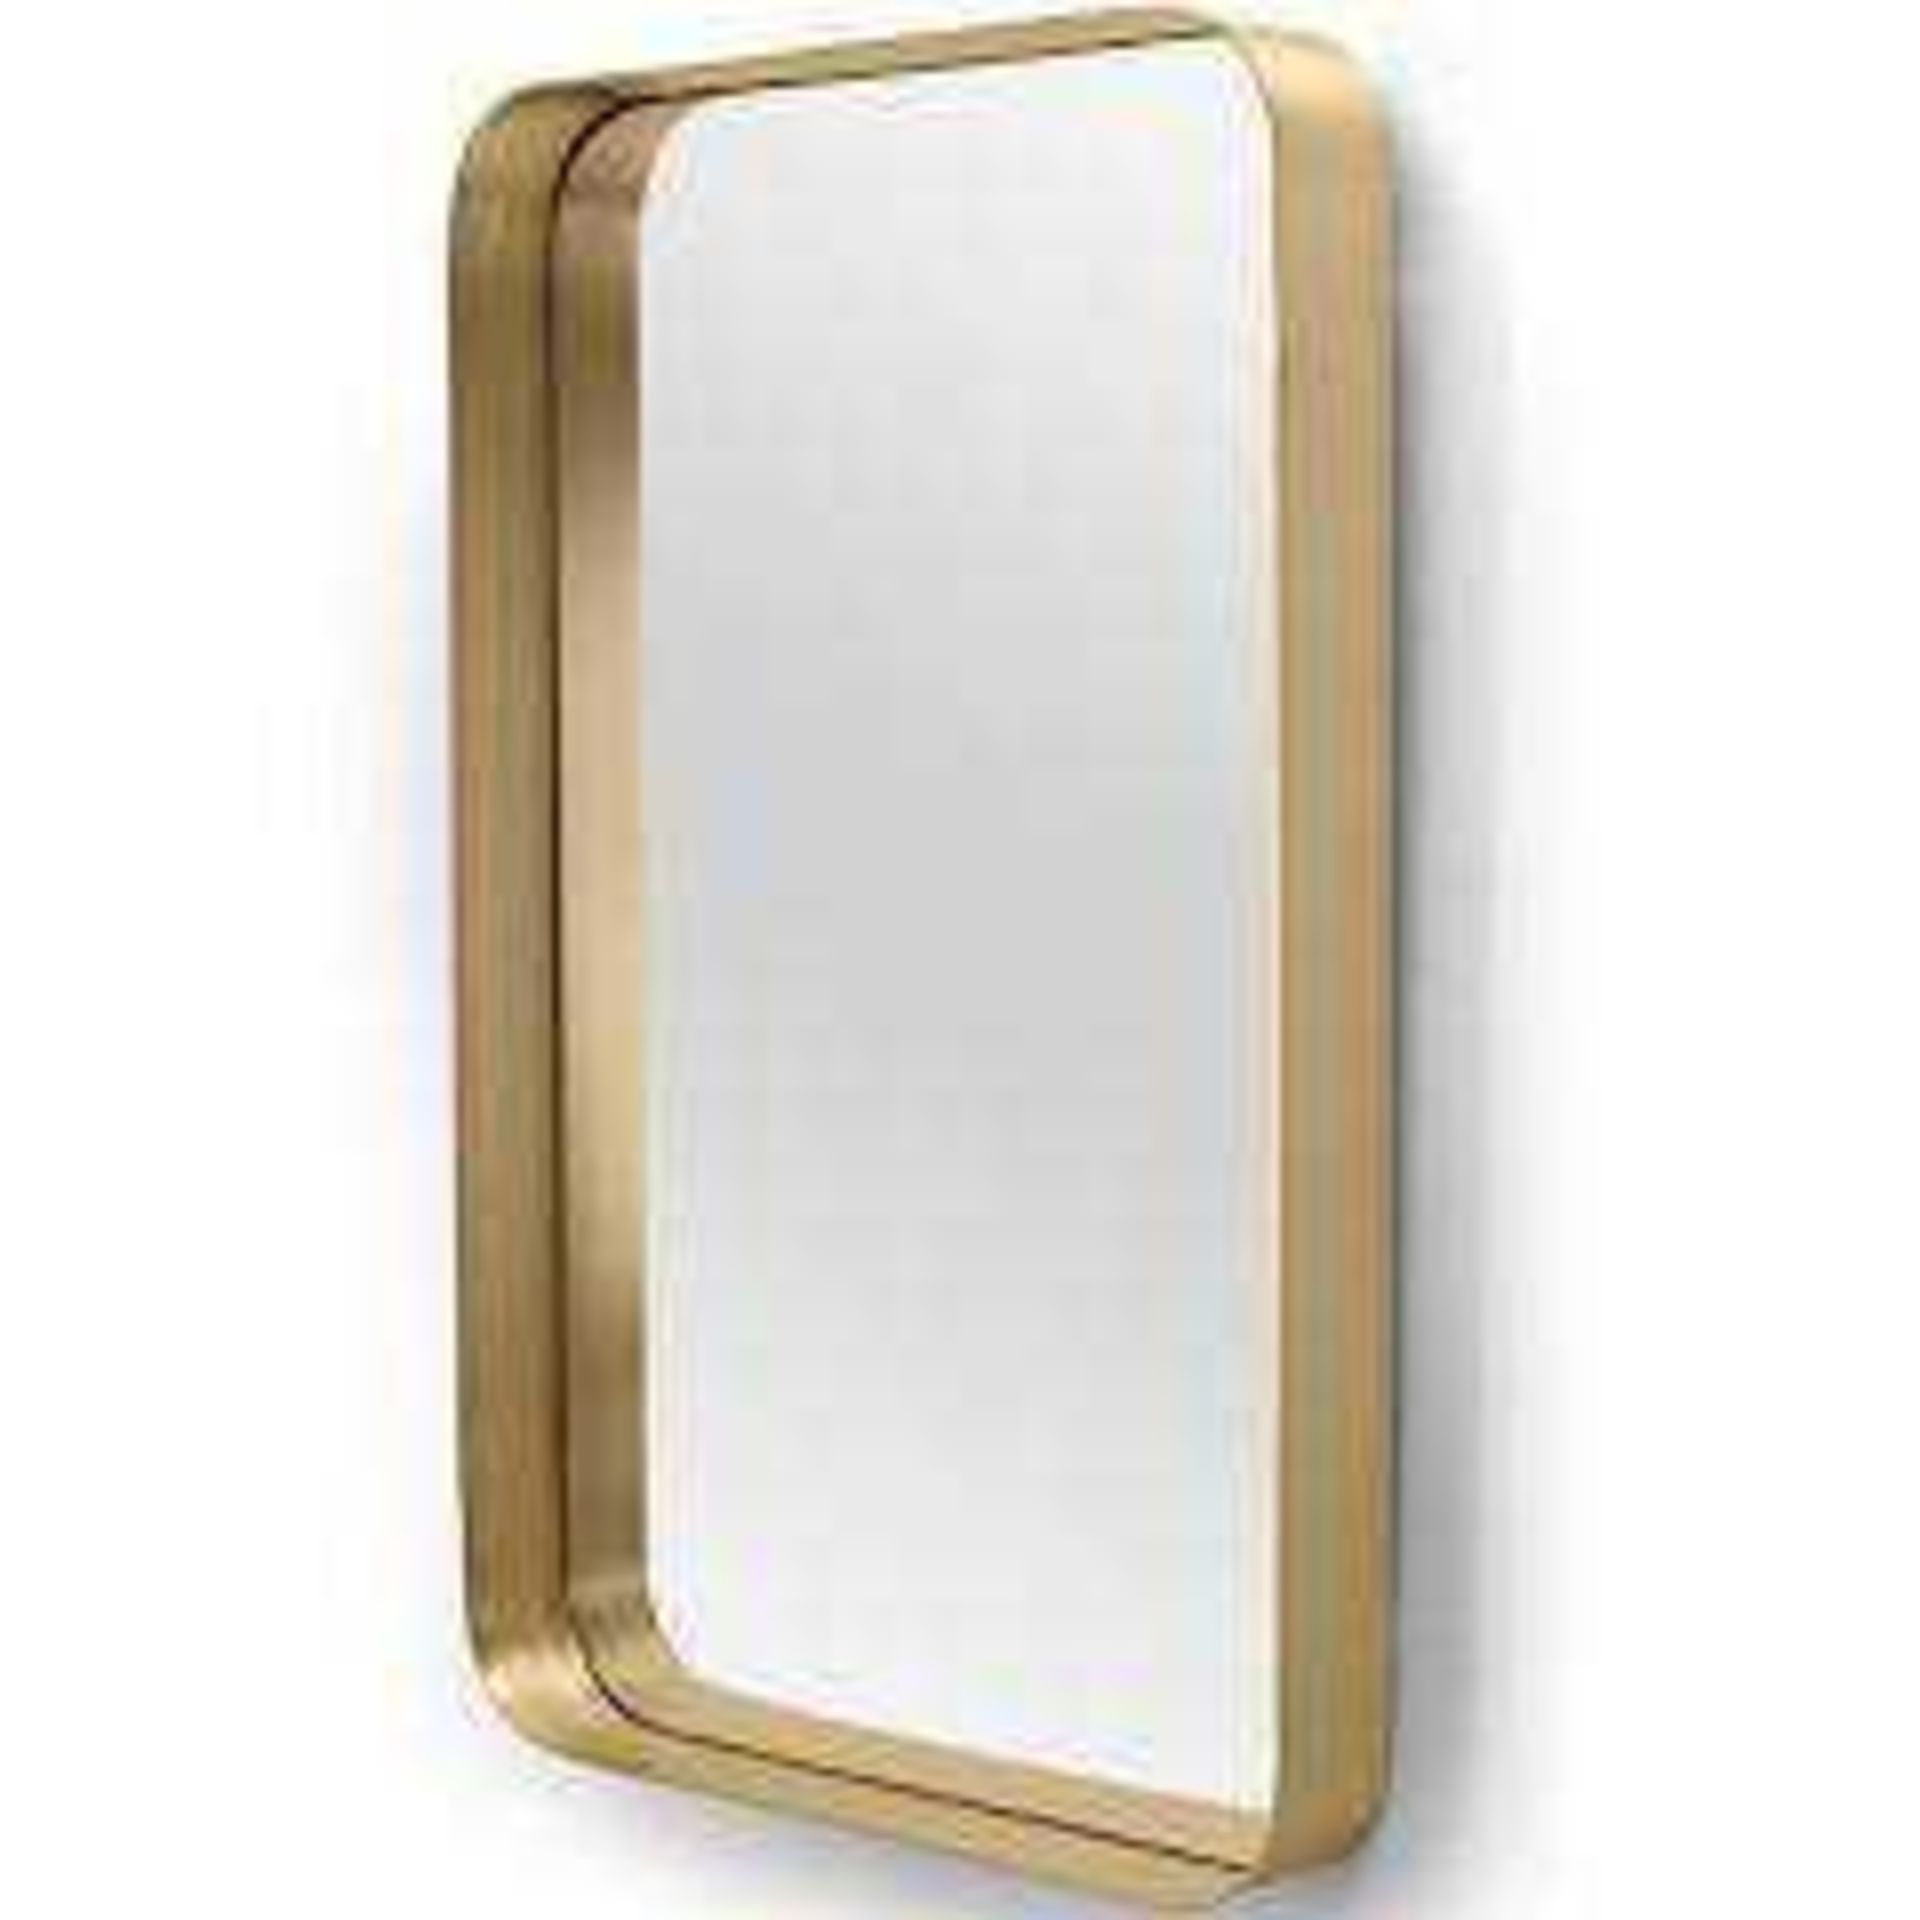 RRP £199 | 1x | Alana Rectangular Mirror Extra Large 70 x 100cm Brushed Brass